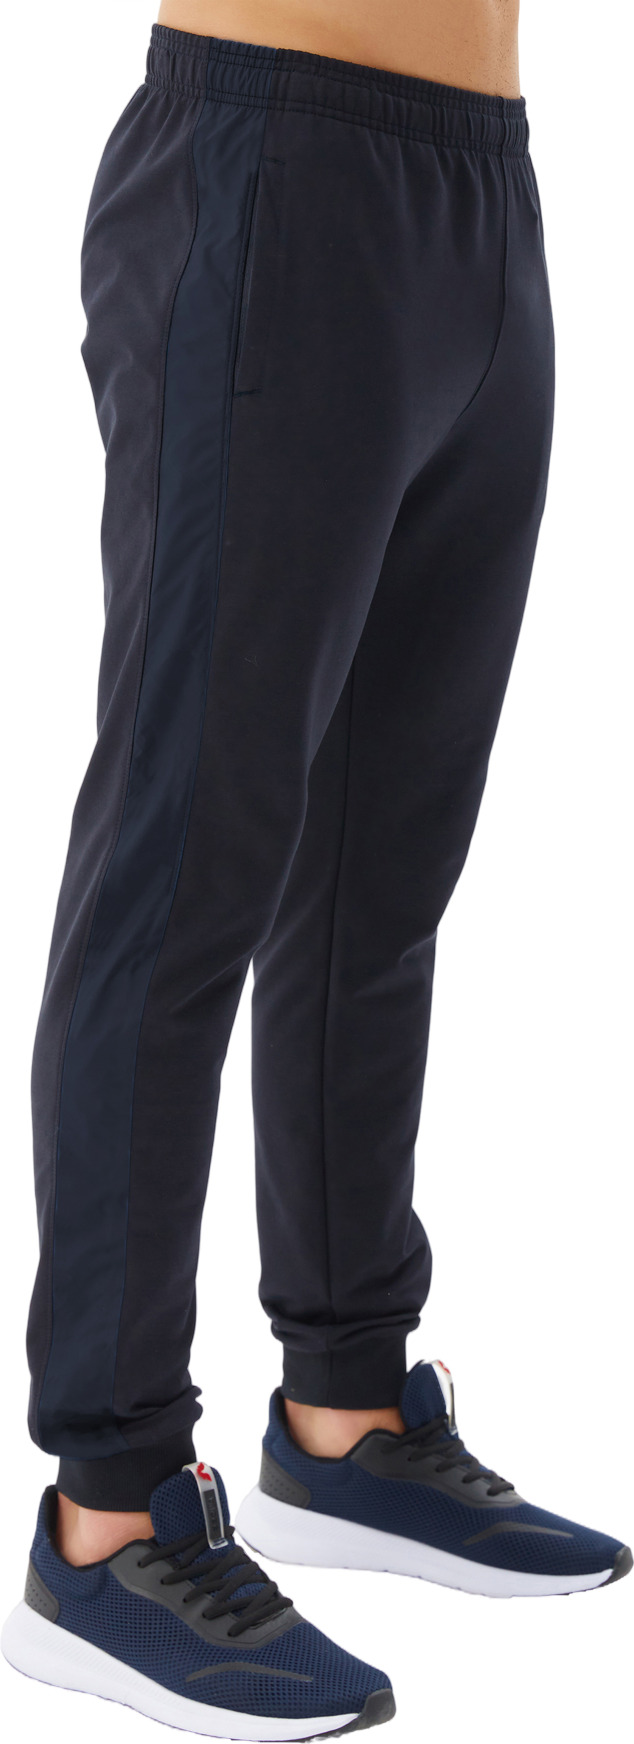 Спортивные брюки мужские Bilcee Men's Sweatpants синие S